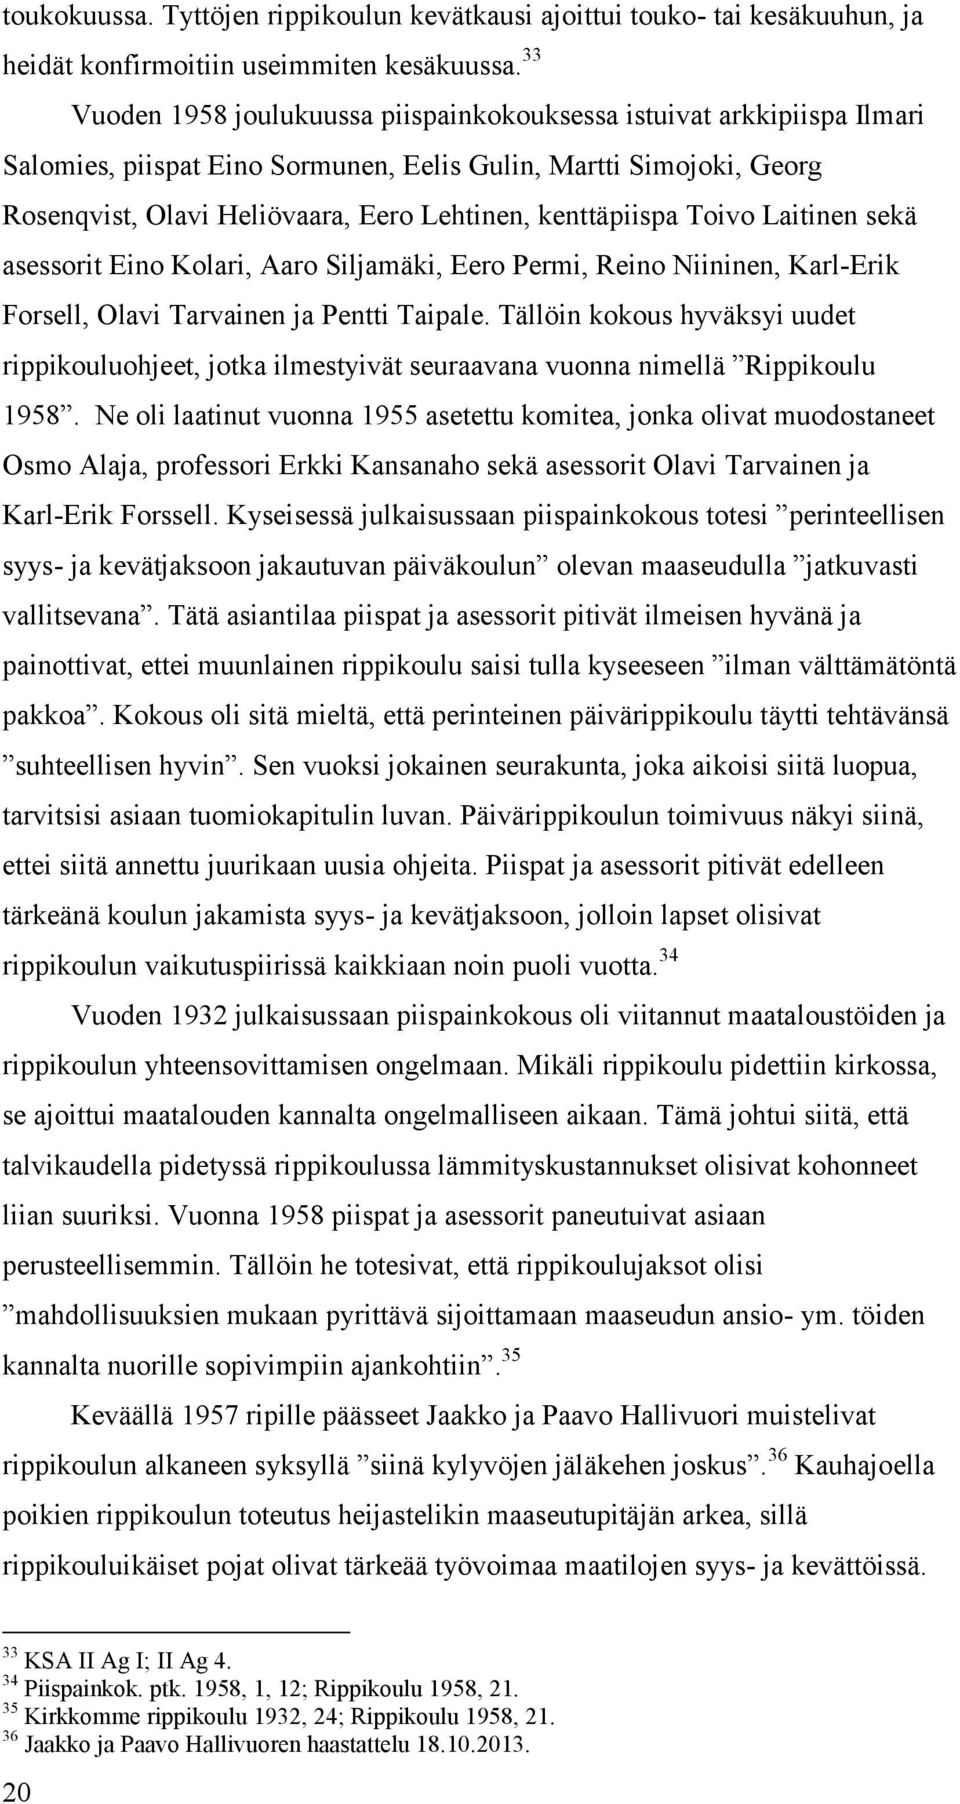 kenttäpiispa Toivo Laitinen sekä asessorit Eino Kolari, Aaro Siljamäki, Eero Permi, Reino Niininen, Karl-Erik Forsell, Olavi Tarvainen ja Pentti Taipale.